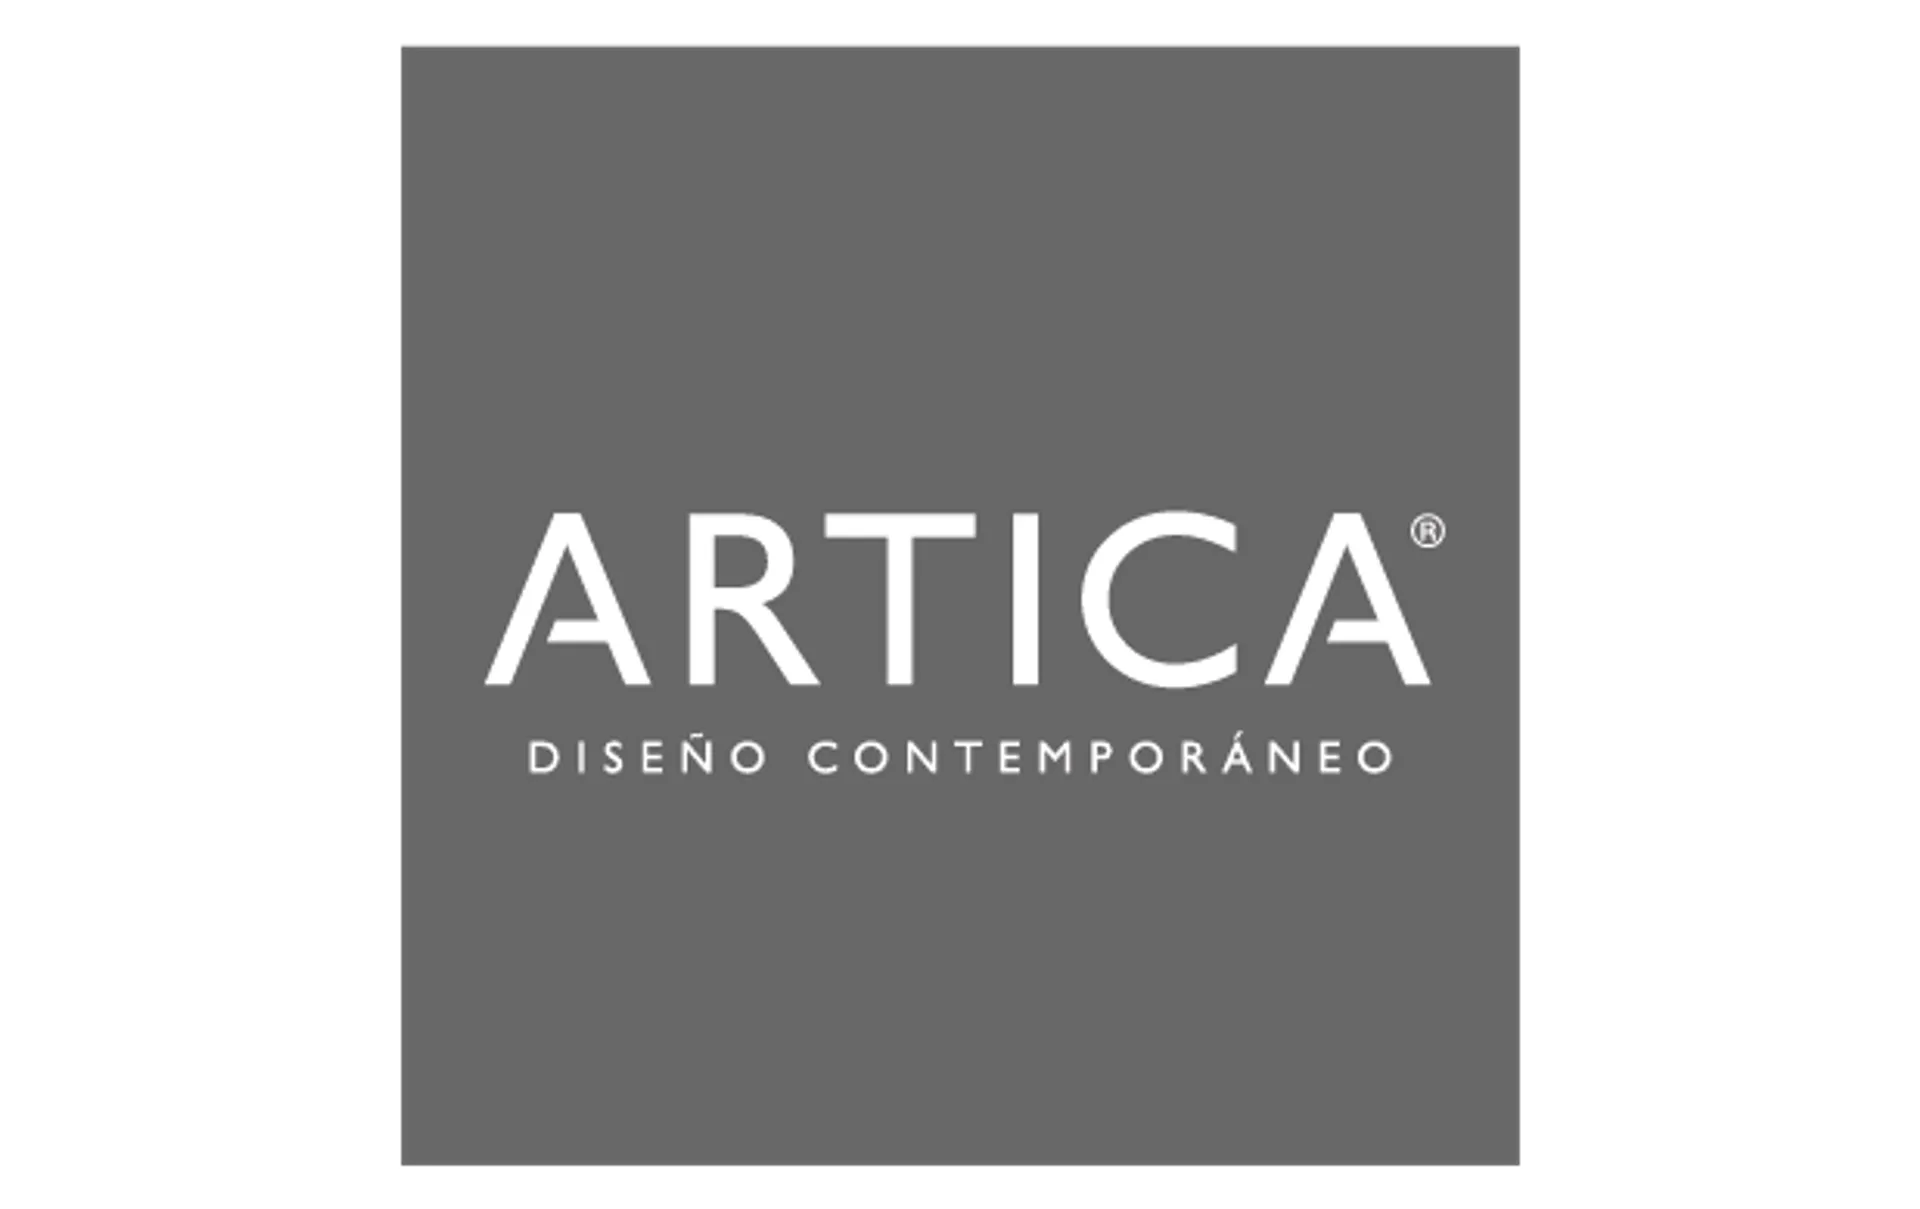 ARTICA logo